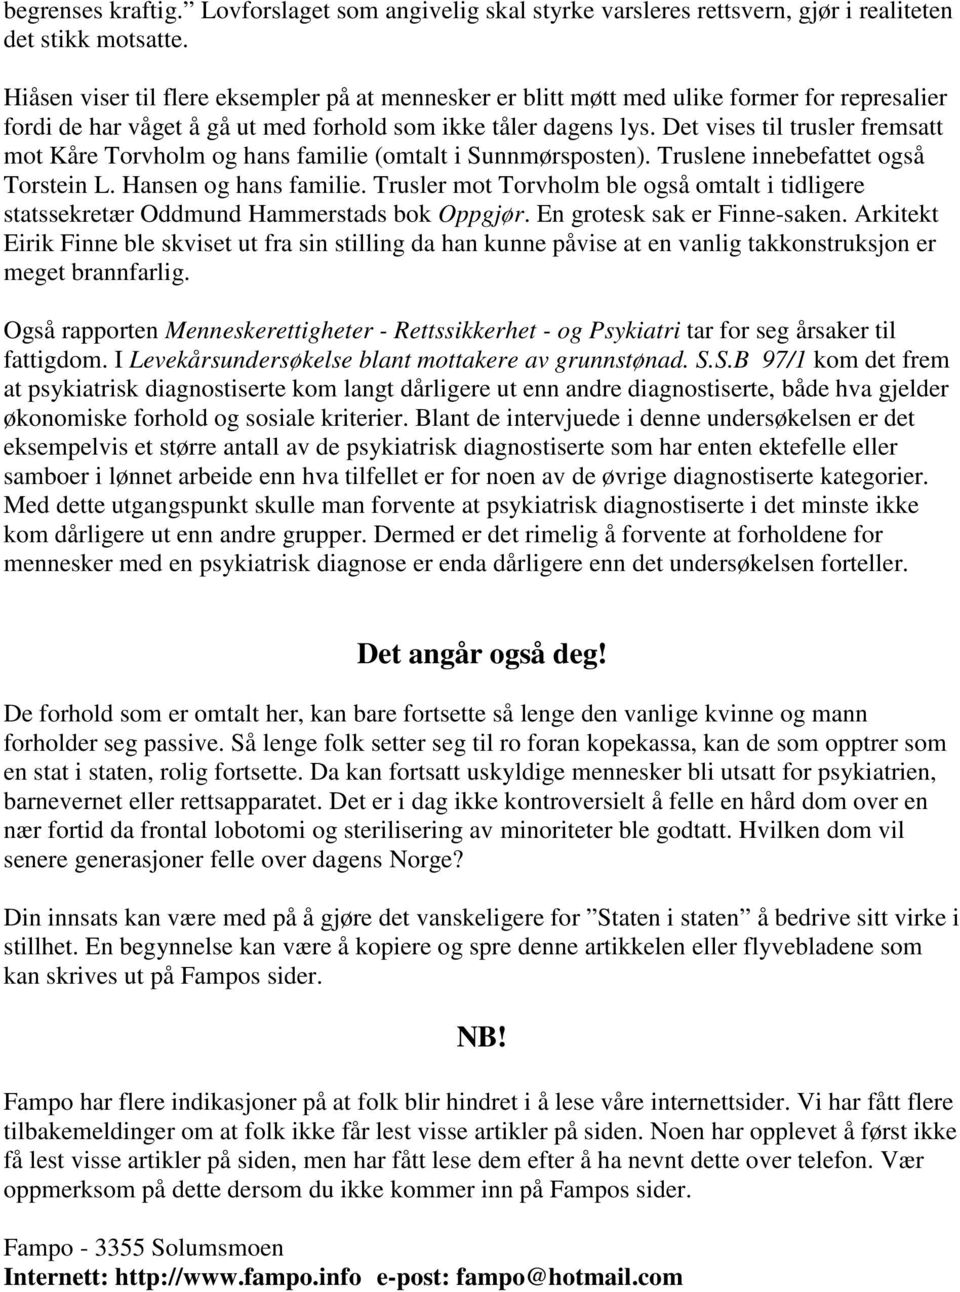 Det vises til trusler fremsatt mot Kåre Torvholm og hans familie (omtalt i Sunnmørsposten). Truslene innebefattet også Torstein L. Hansen og hans familie.